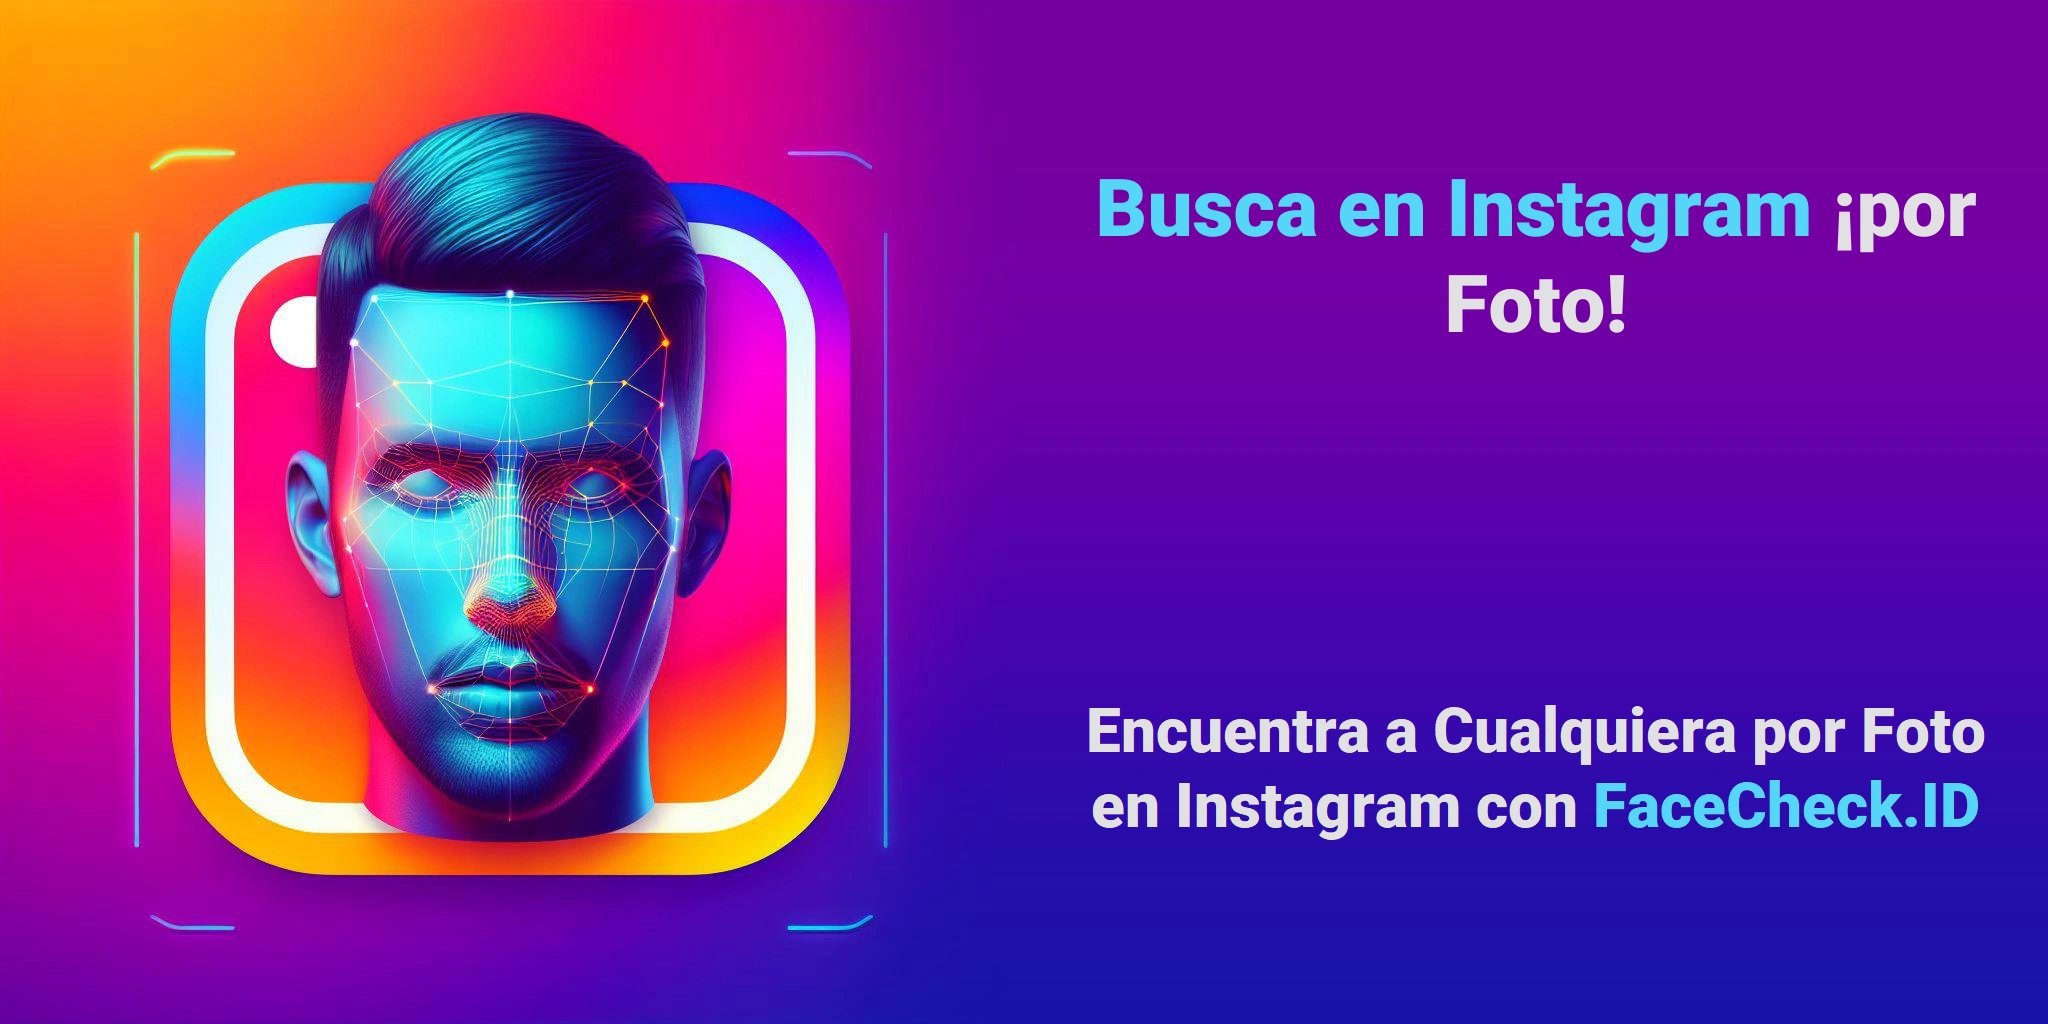 Busca en Instagram ¡por Foto! Encuentra a Cualquiera por Foto en Instagram con FaceCheck.ID